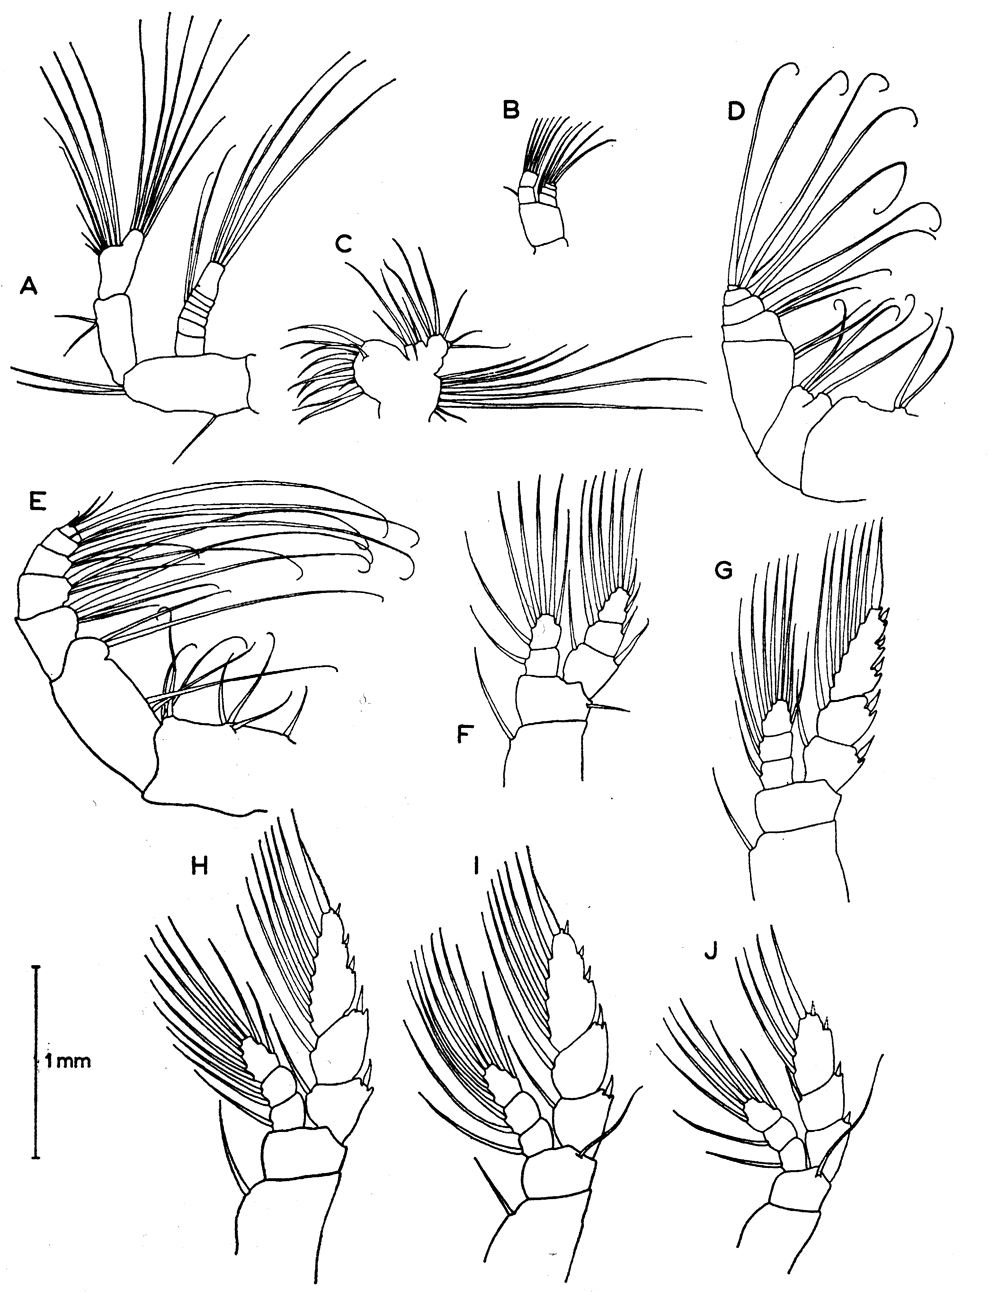 Espce Euaugaptilus hulsemannae - Planche 2 de figures morphologiques